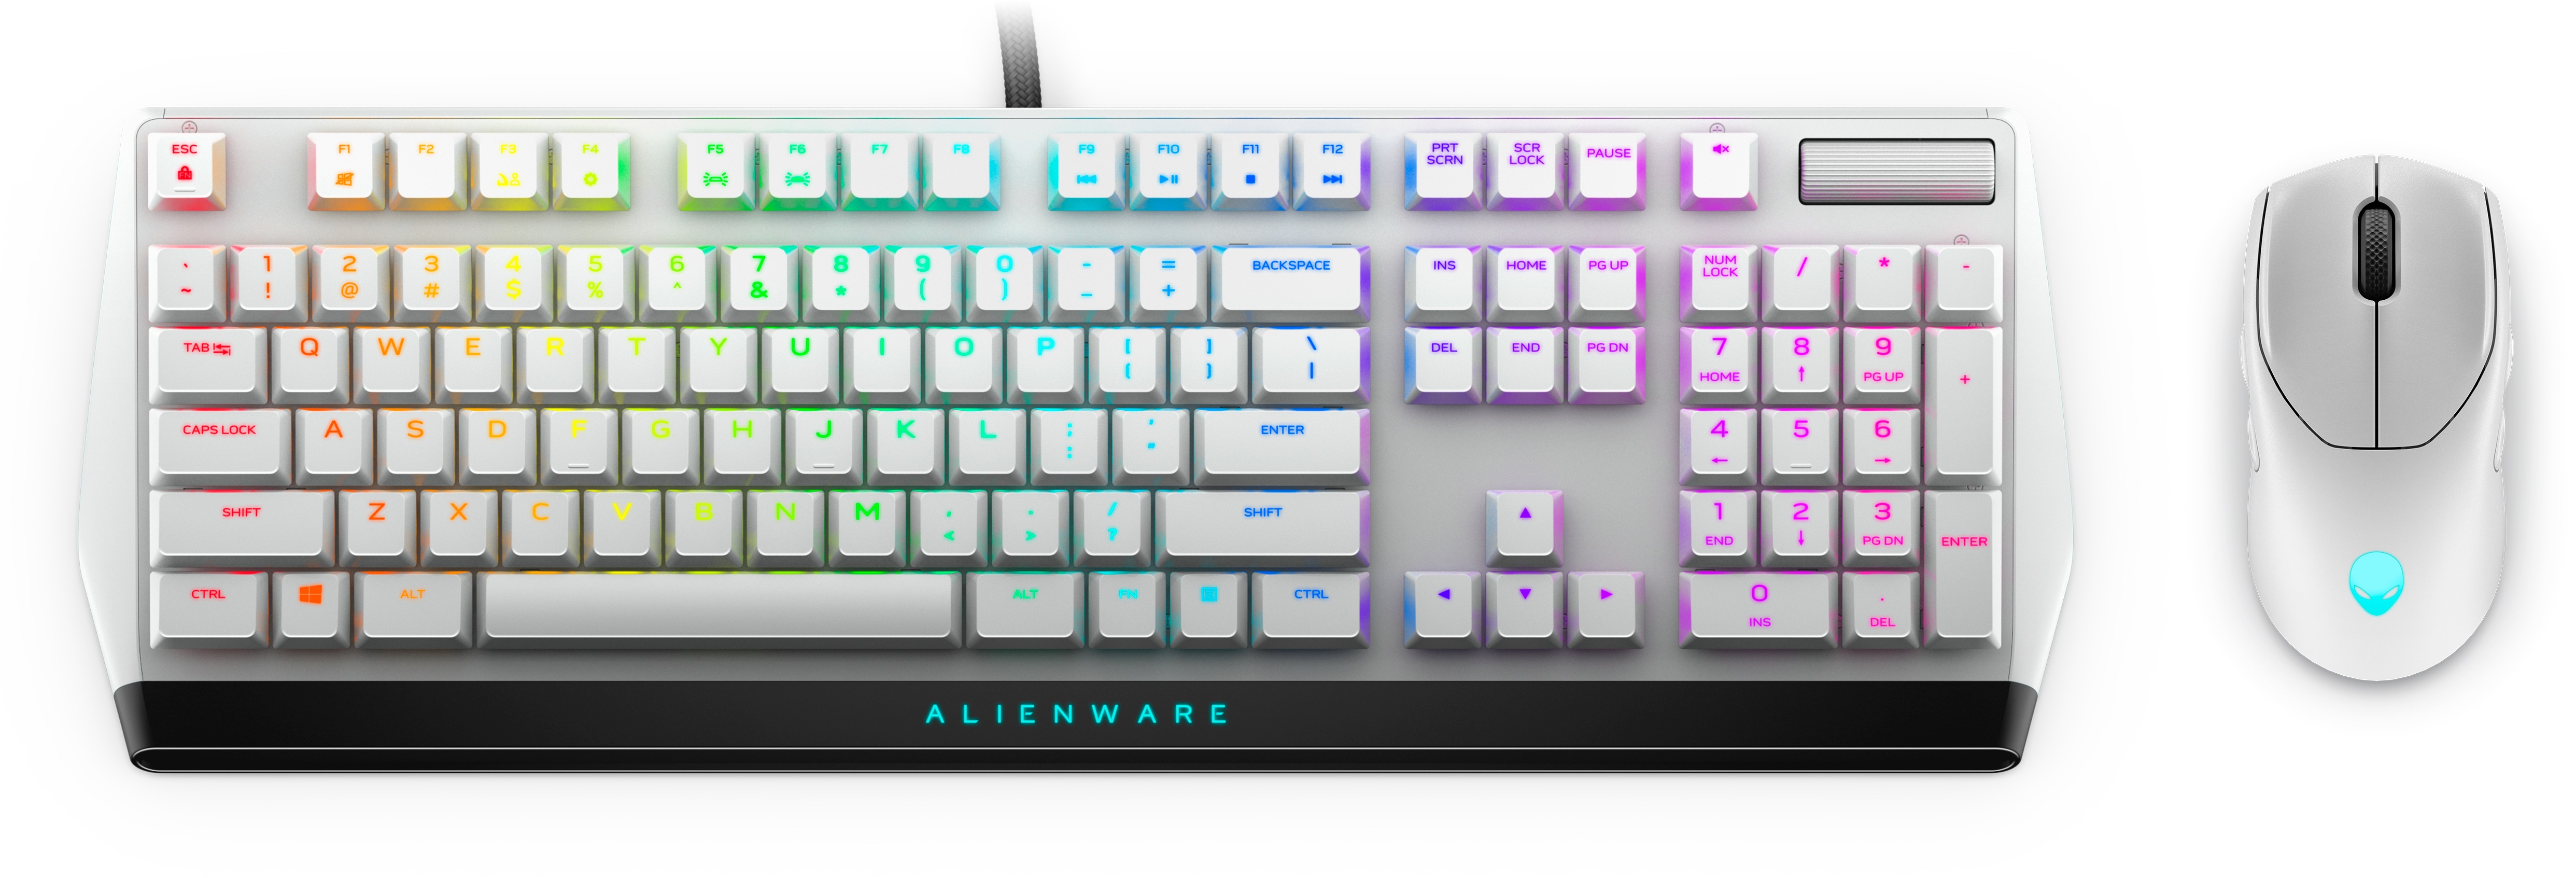 alienware keyboard